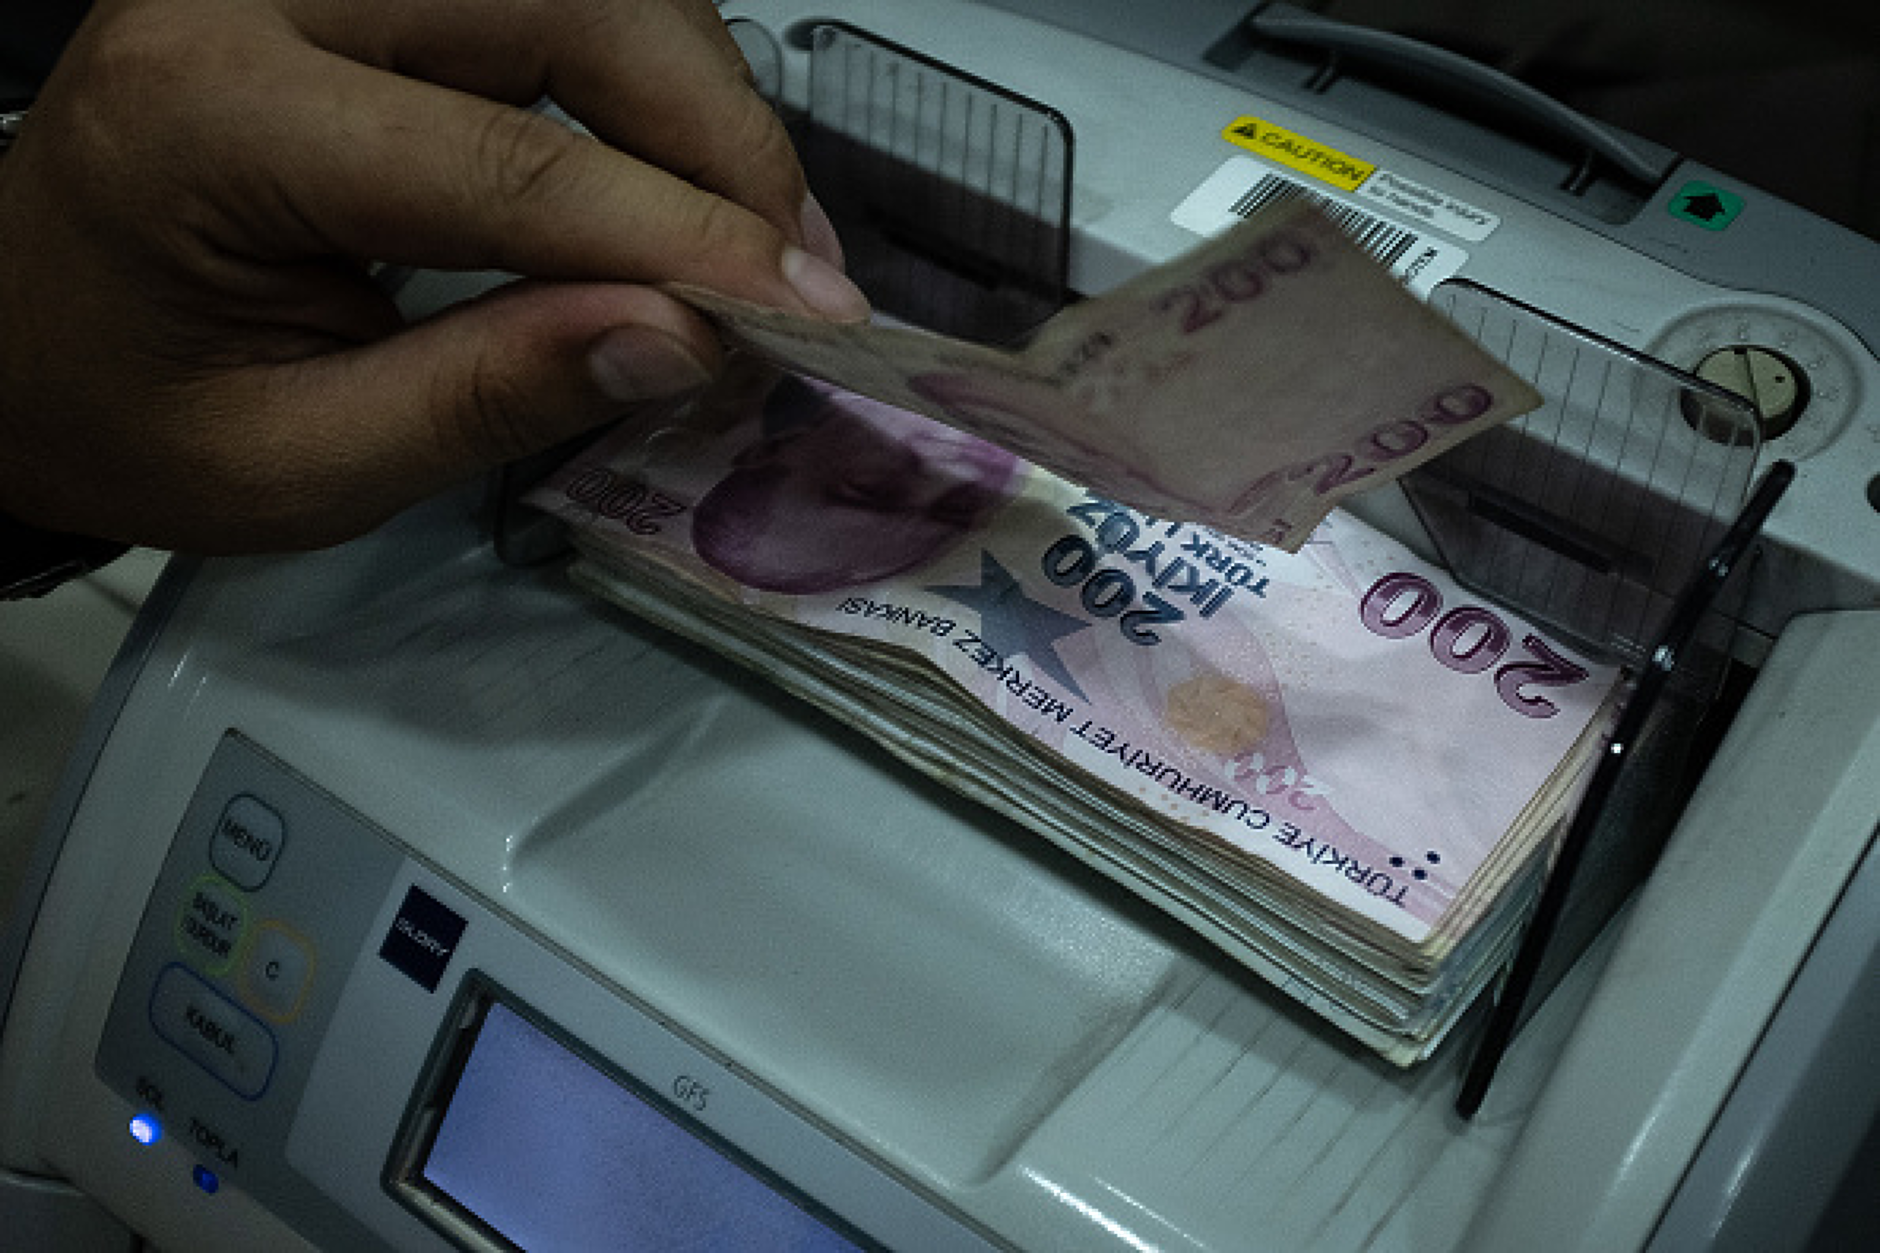 Турската централна банка подготвя въвеждане на банкноти от 500 и 1000 лири